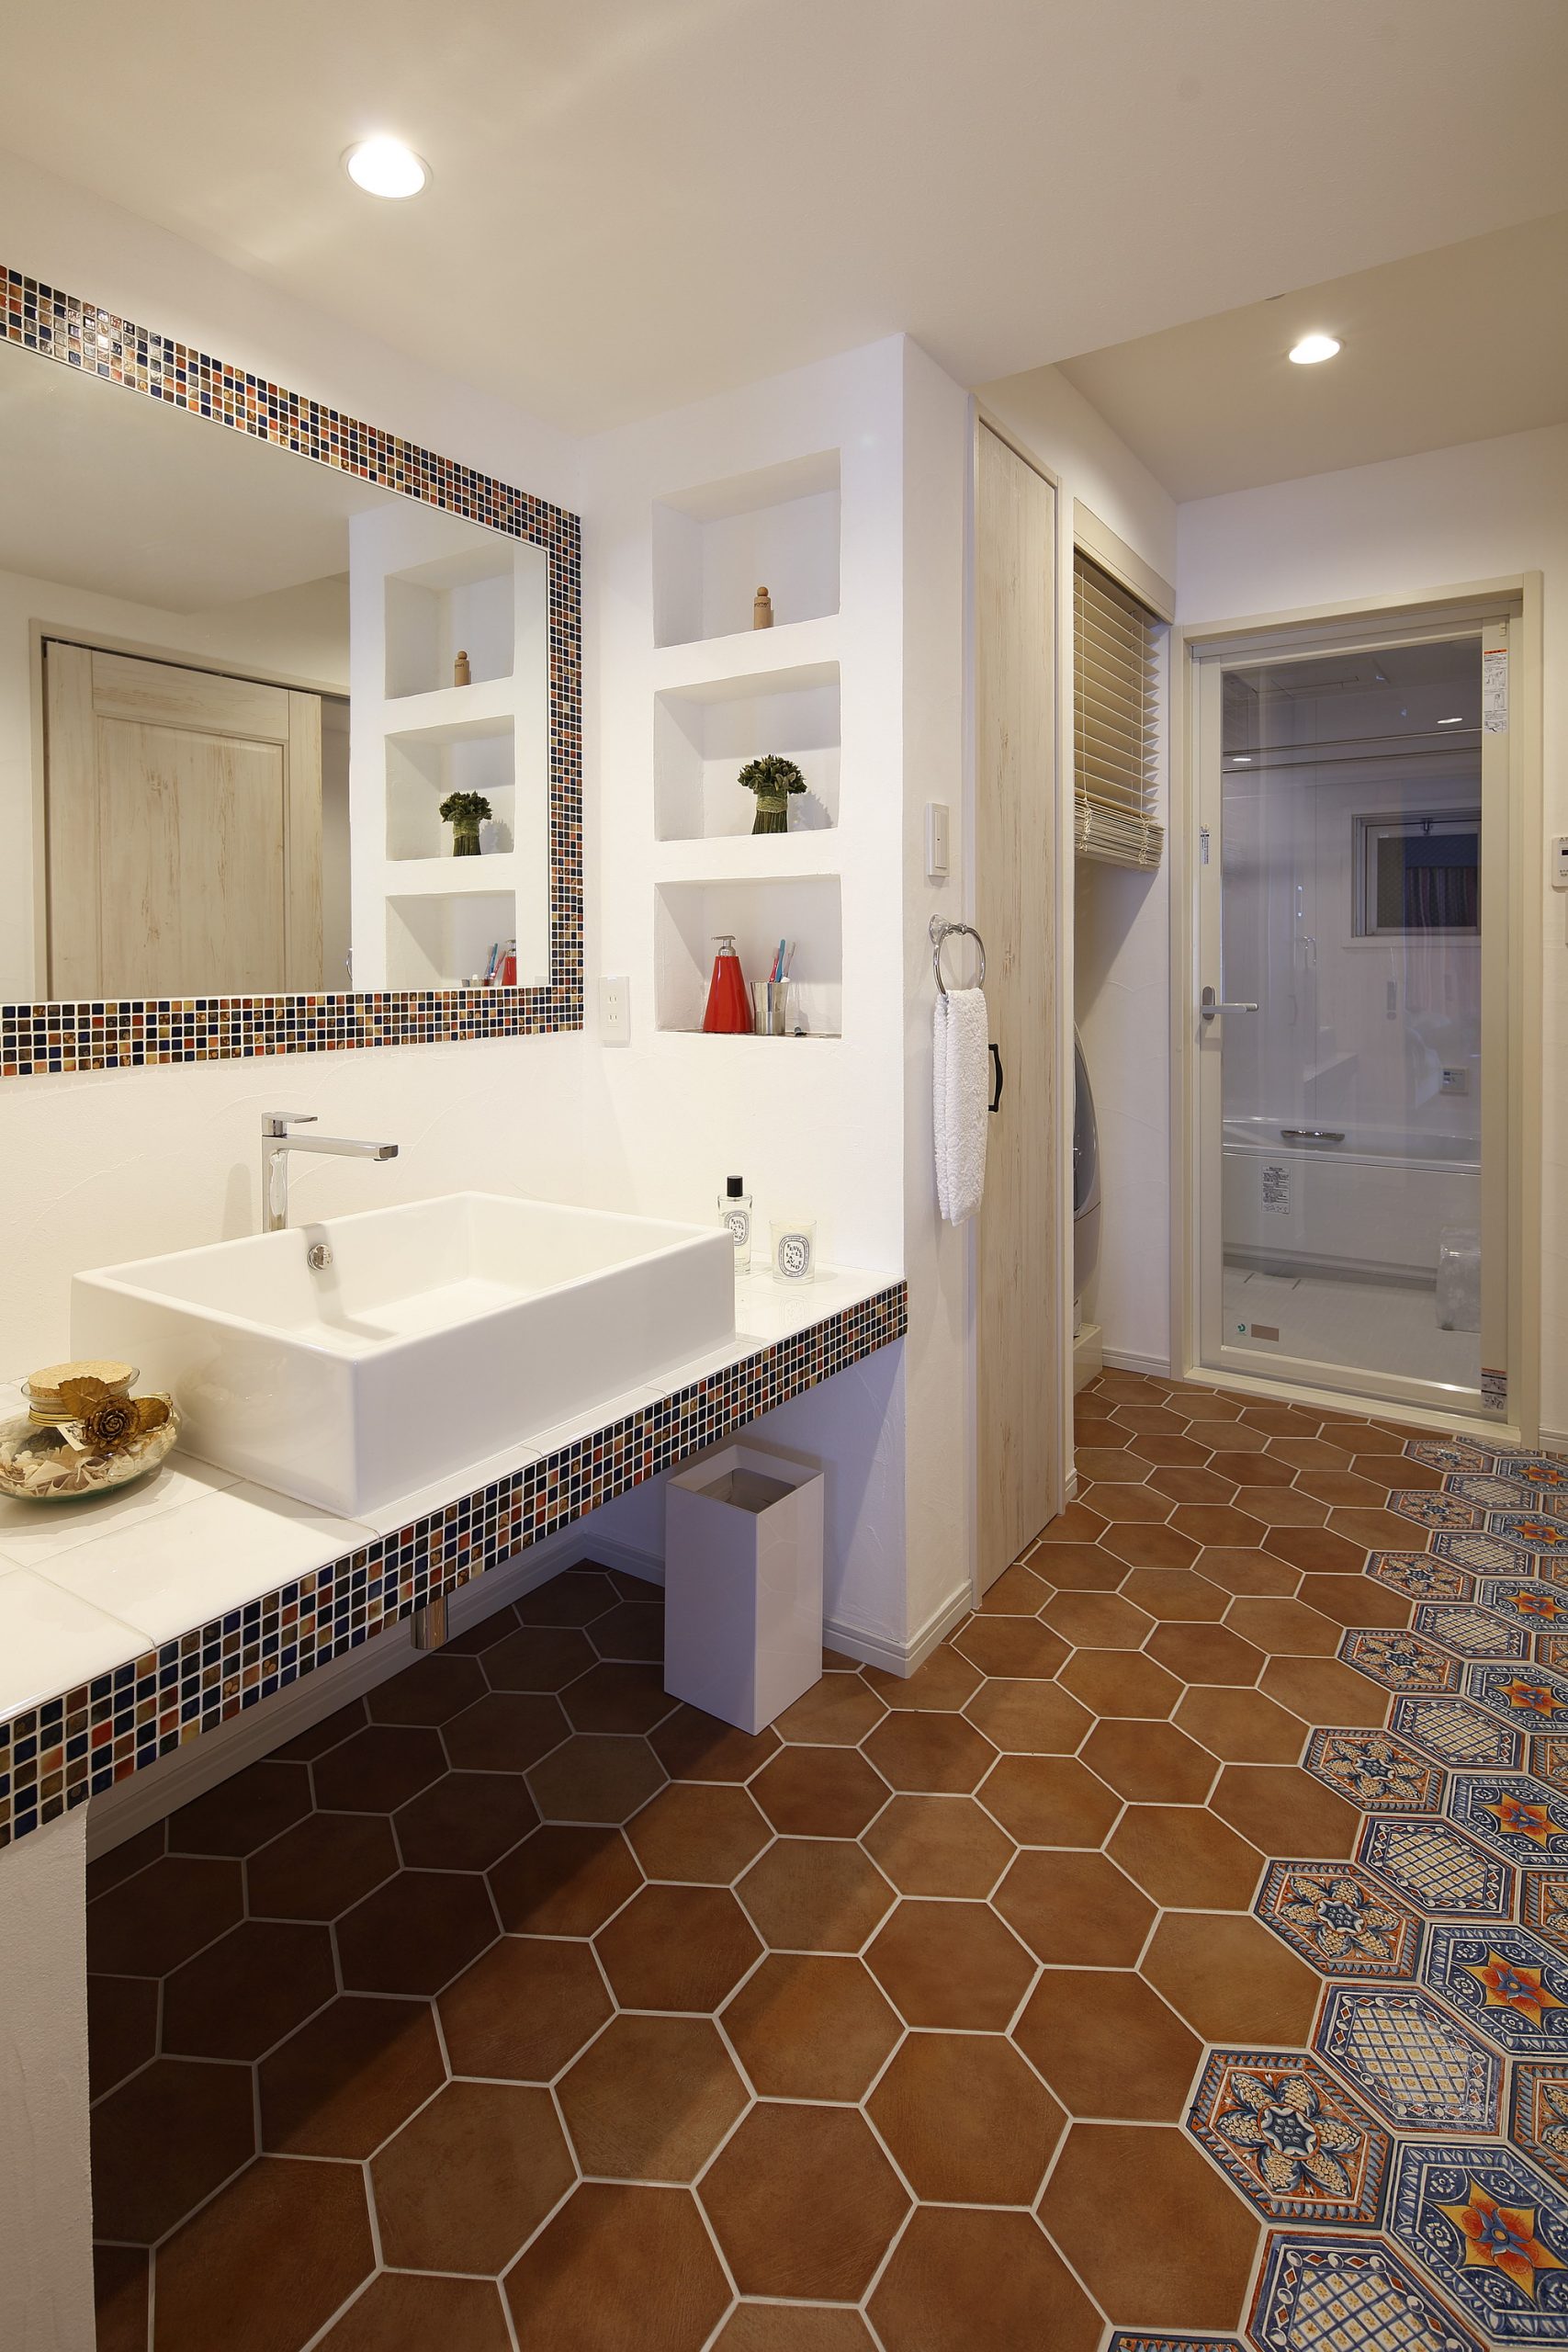 洗面台の写真。洗面台とミラー周りと、床のタイルにもこだわり、オレンジとブルーを基調とした楽しい空間となっている。